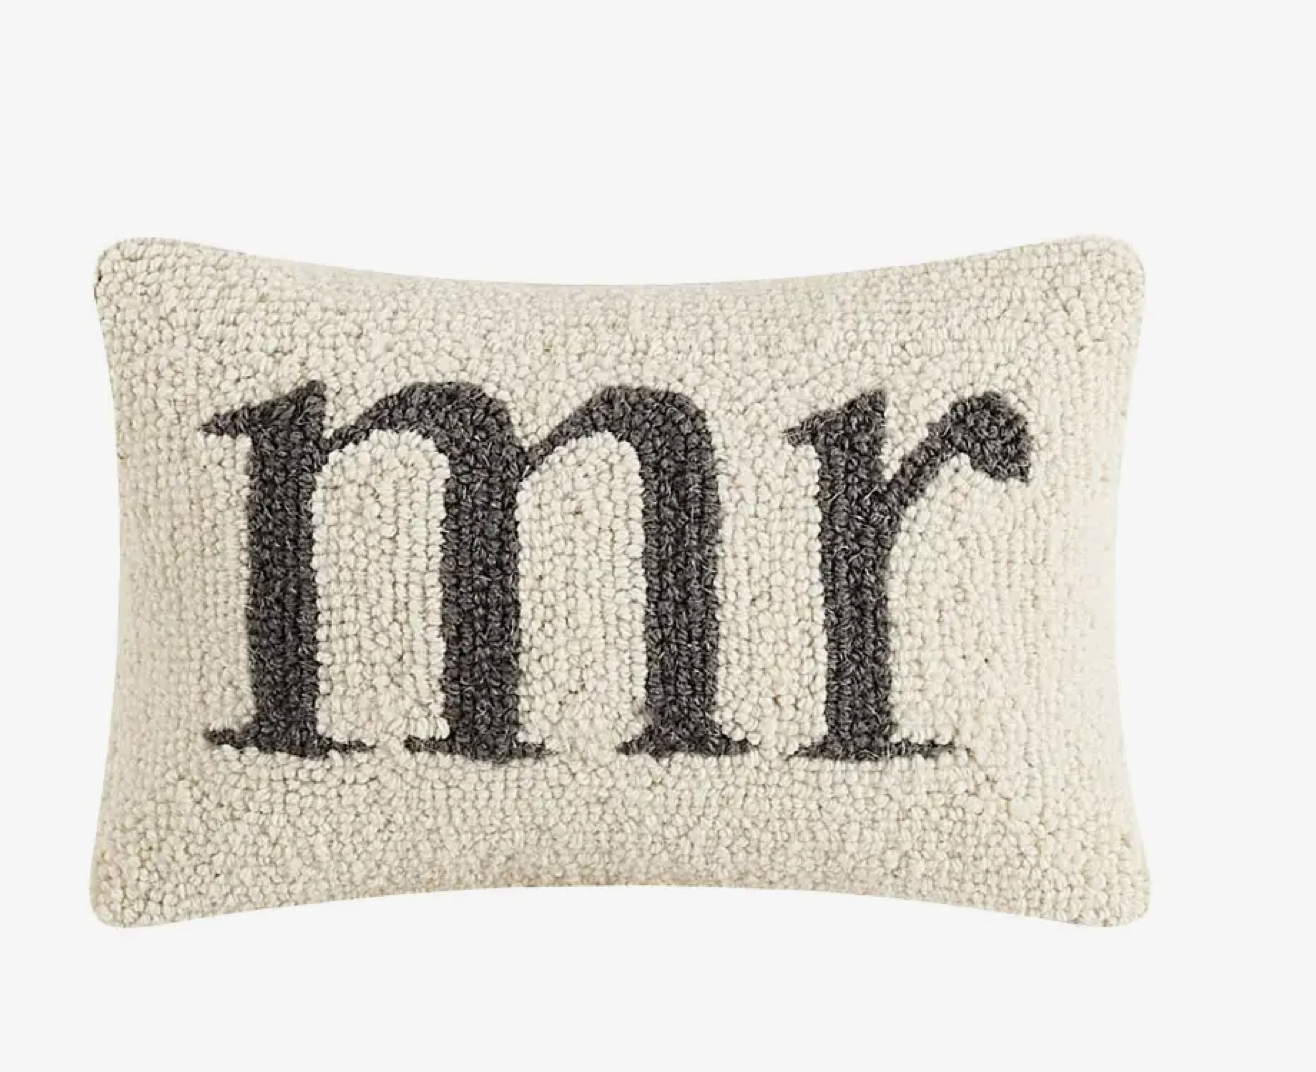 Mr. Hook Pillow